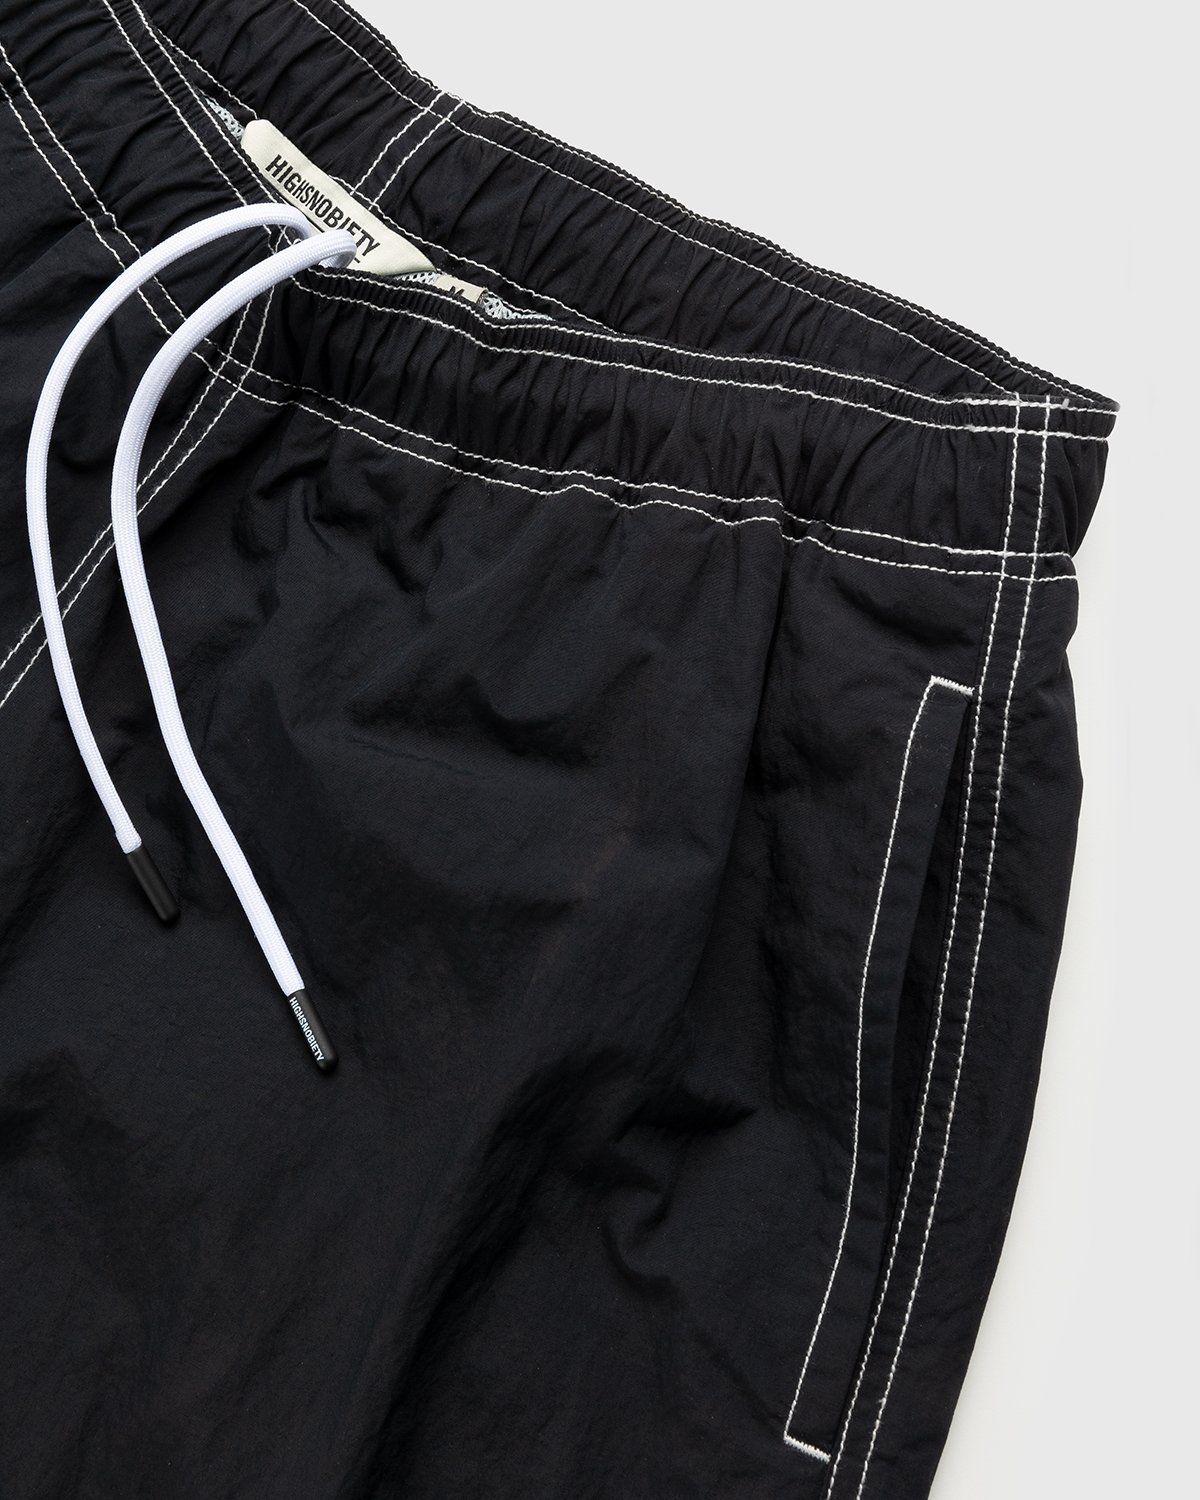 Highsnobiety – Contrast Brushed Nylon Water Shorts Black - Shorts - Black - Image 4